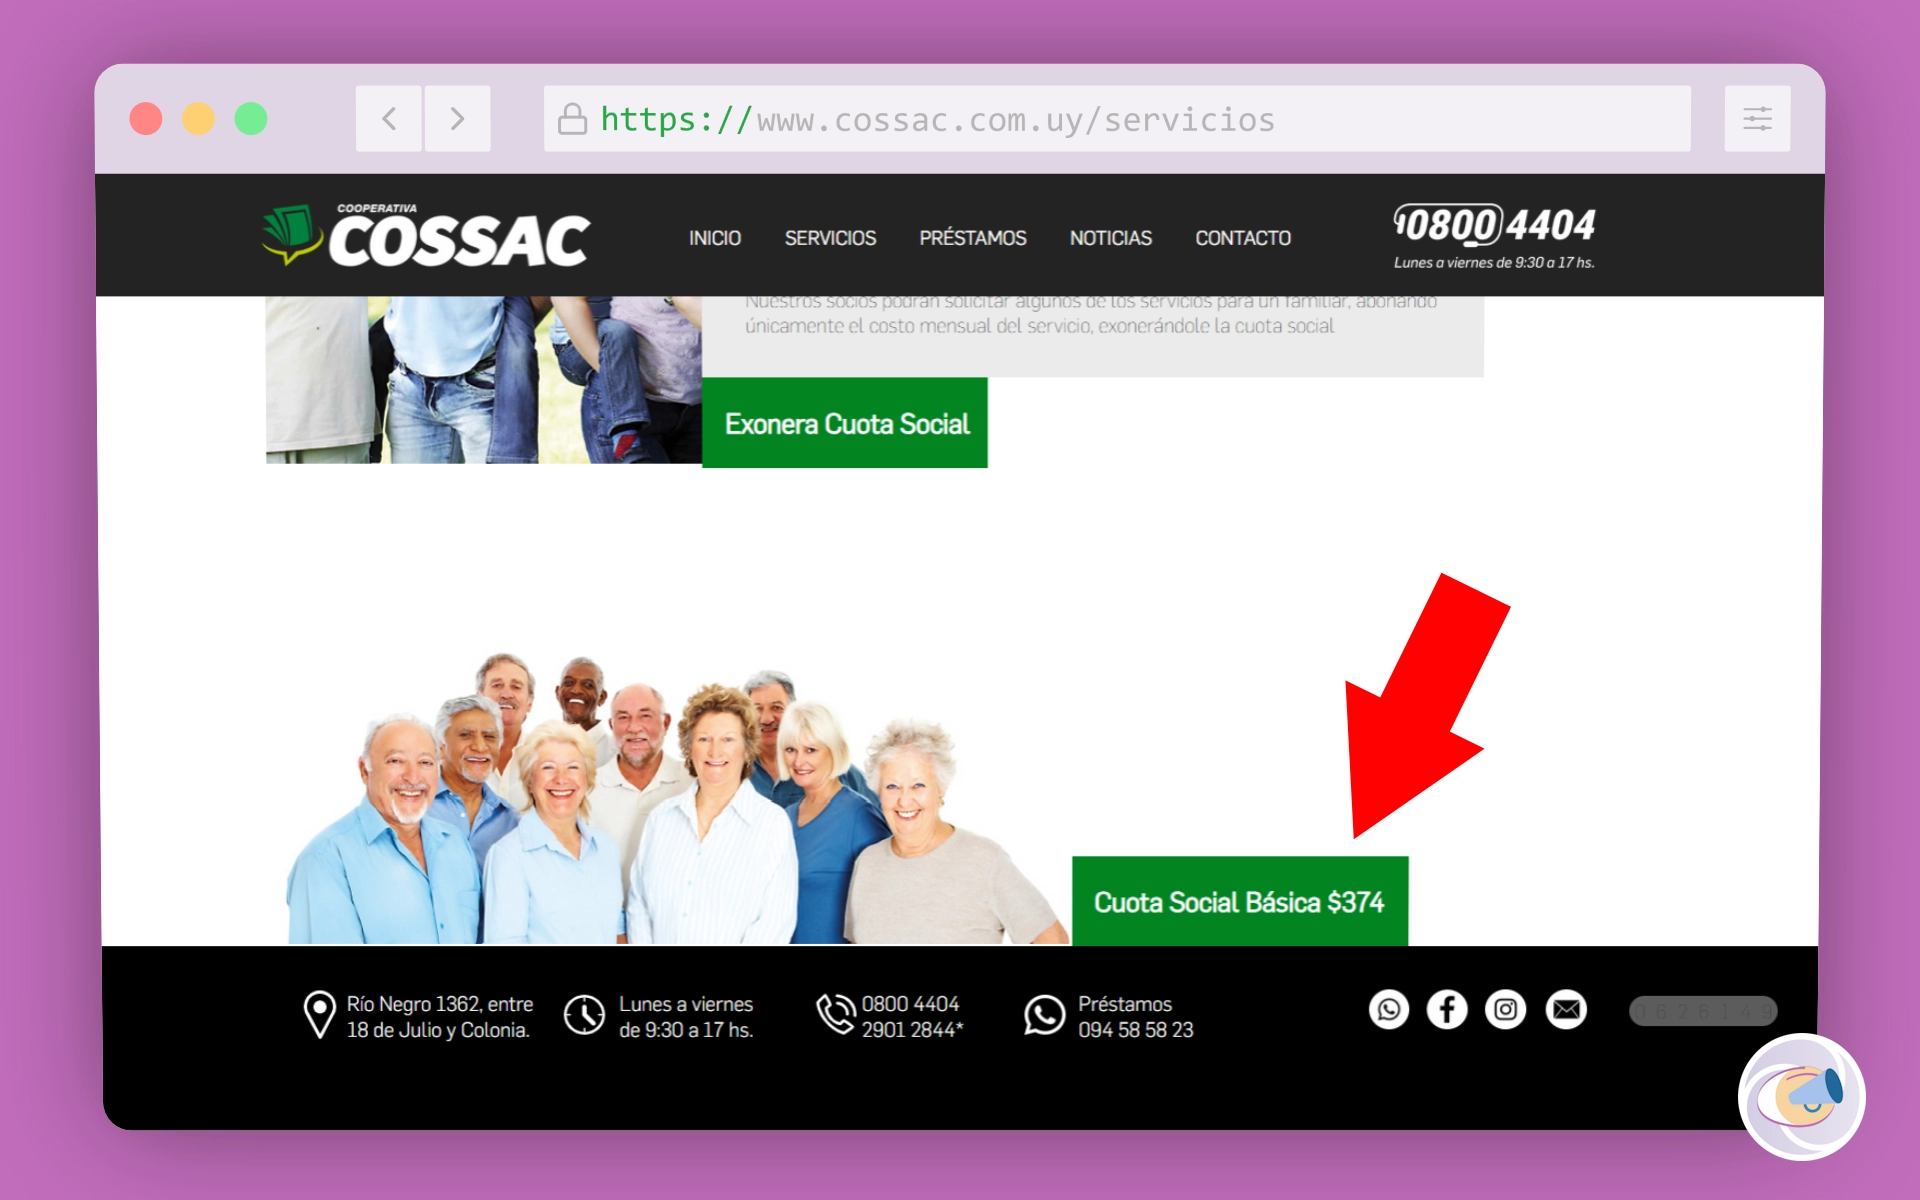 Información sobre el costo de la cuota social en el sitio web de la cooperativa COSSAC.